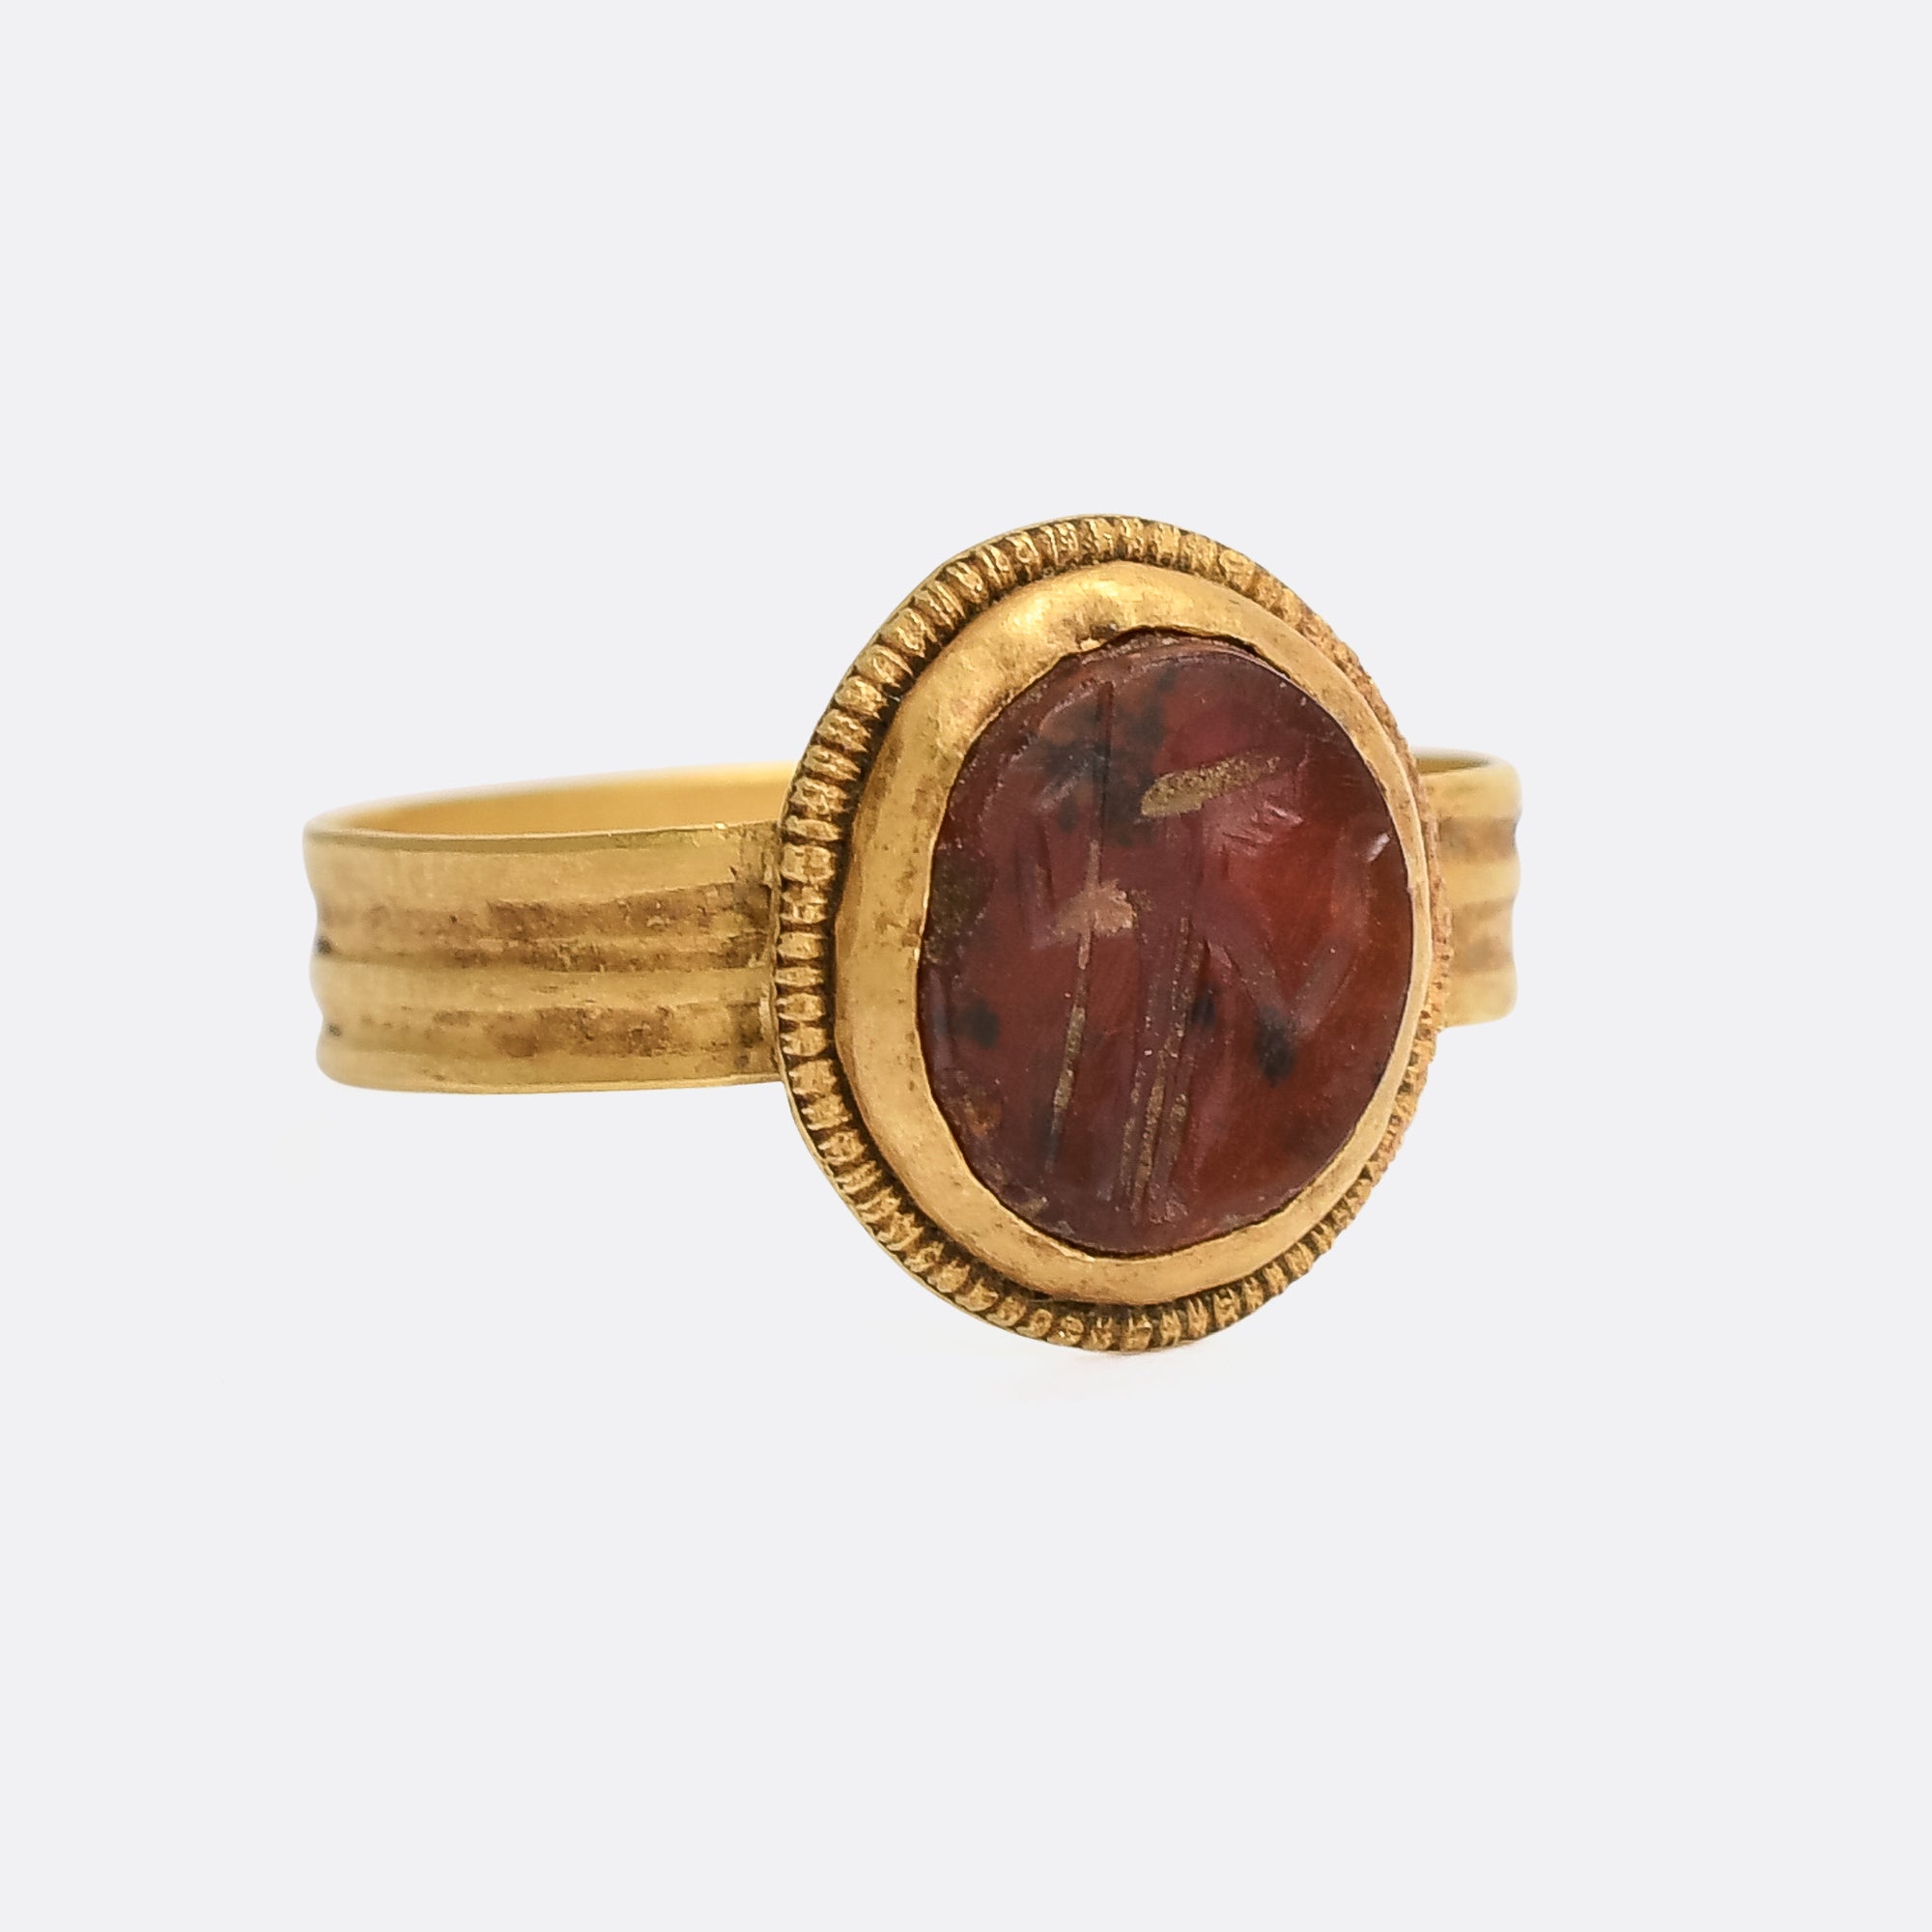 Roman Jewelry – Antique Jewelry University